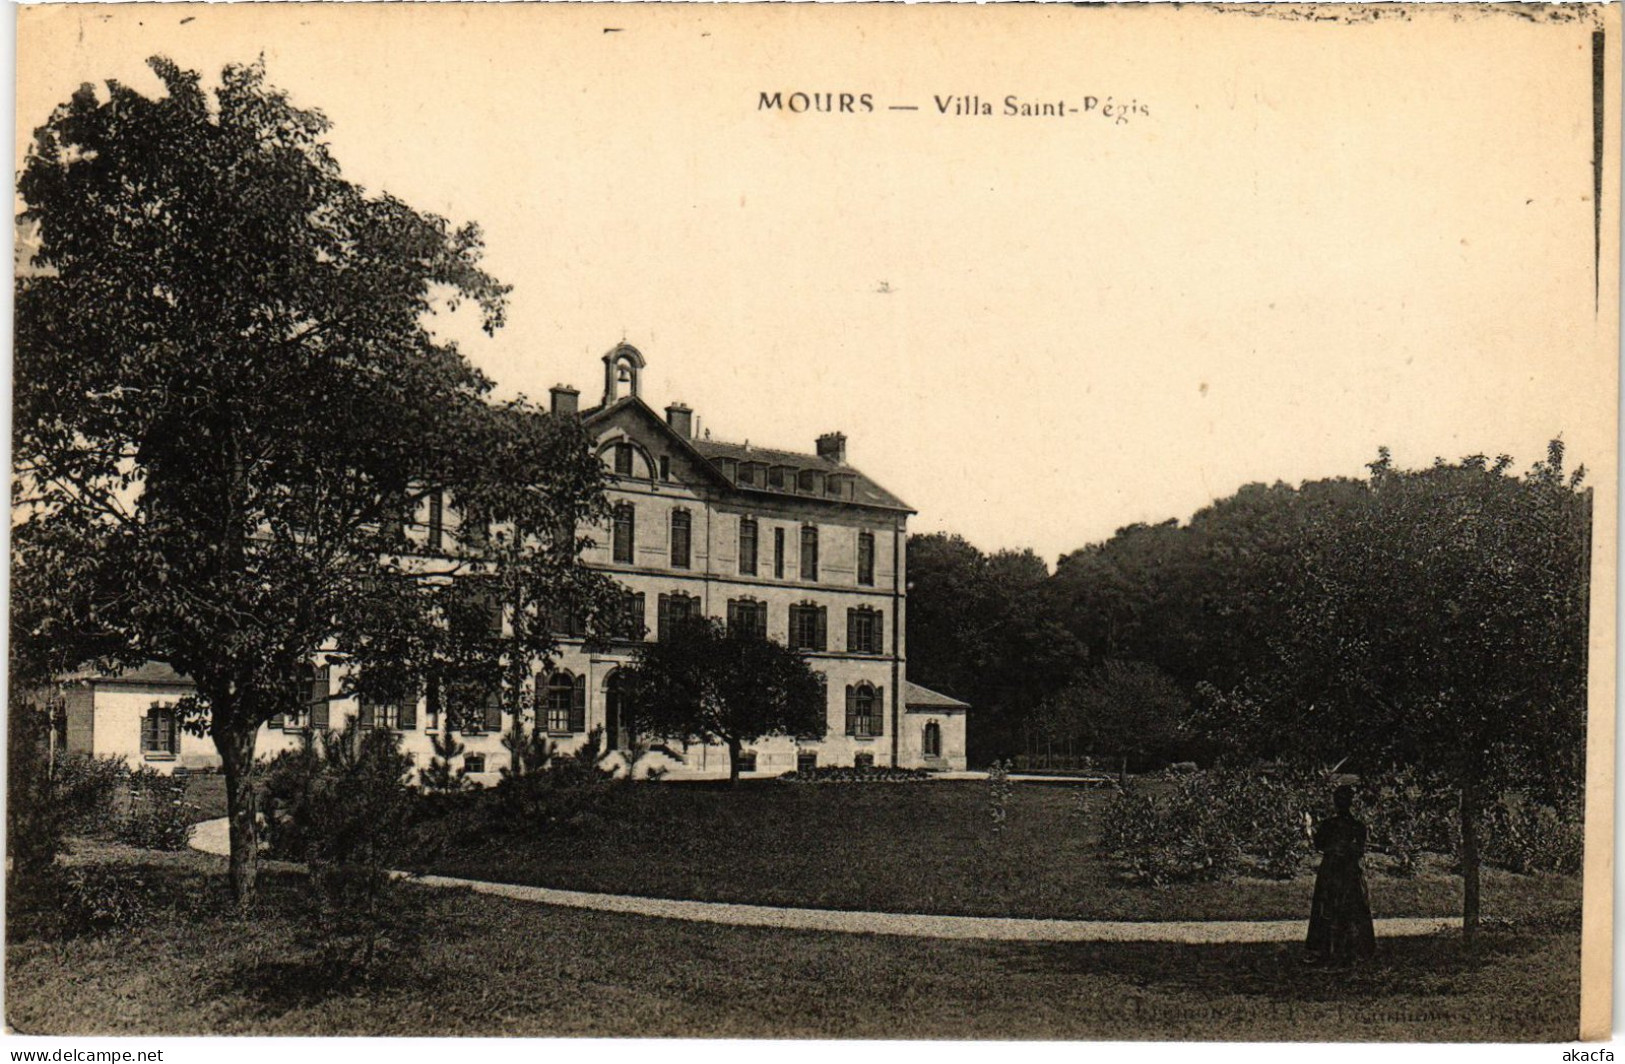 CPA Mours Villa St Regis (1340349) - Mours